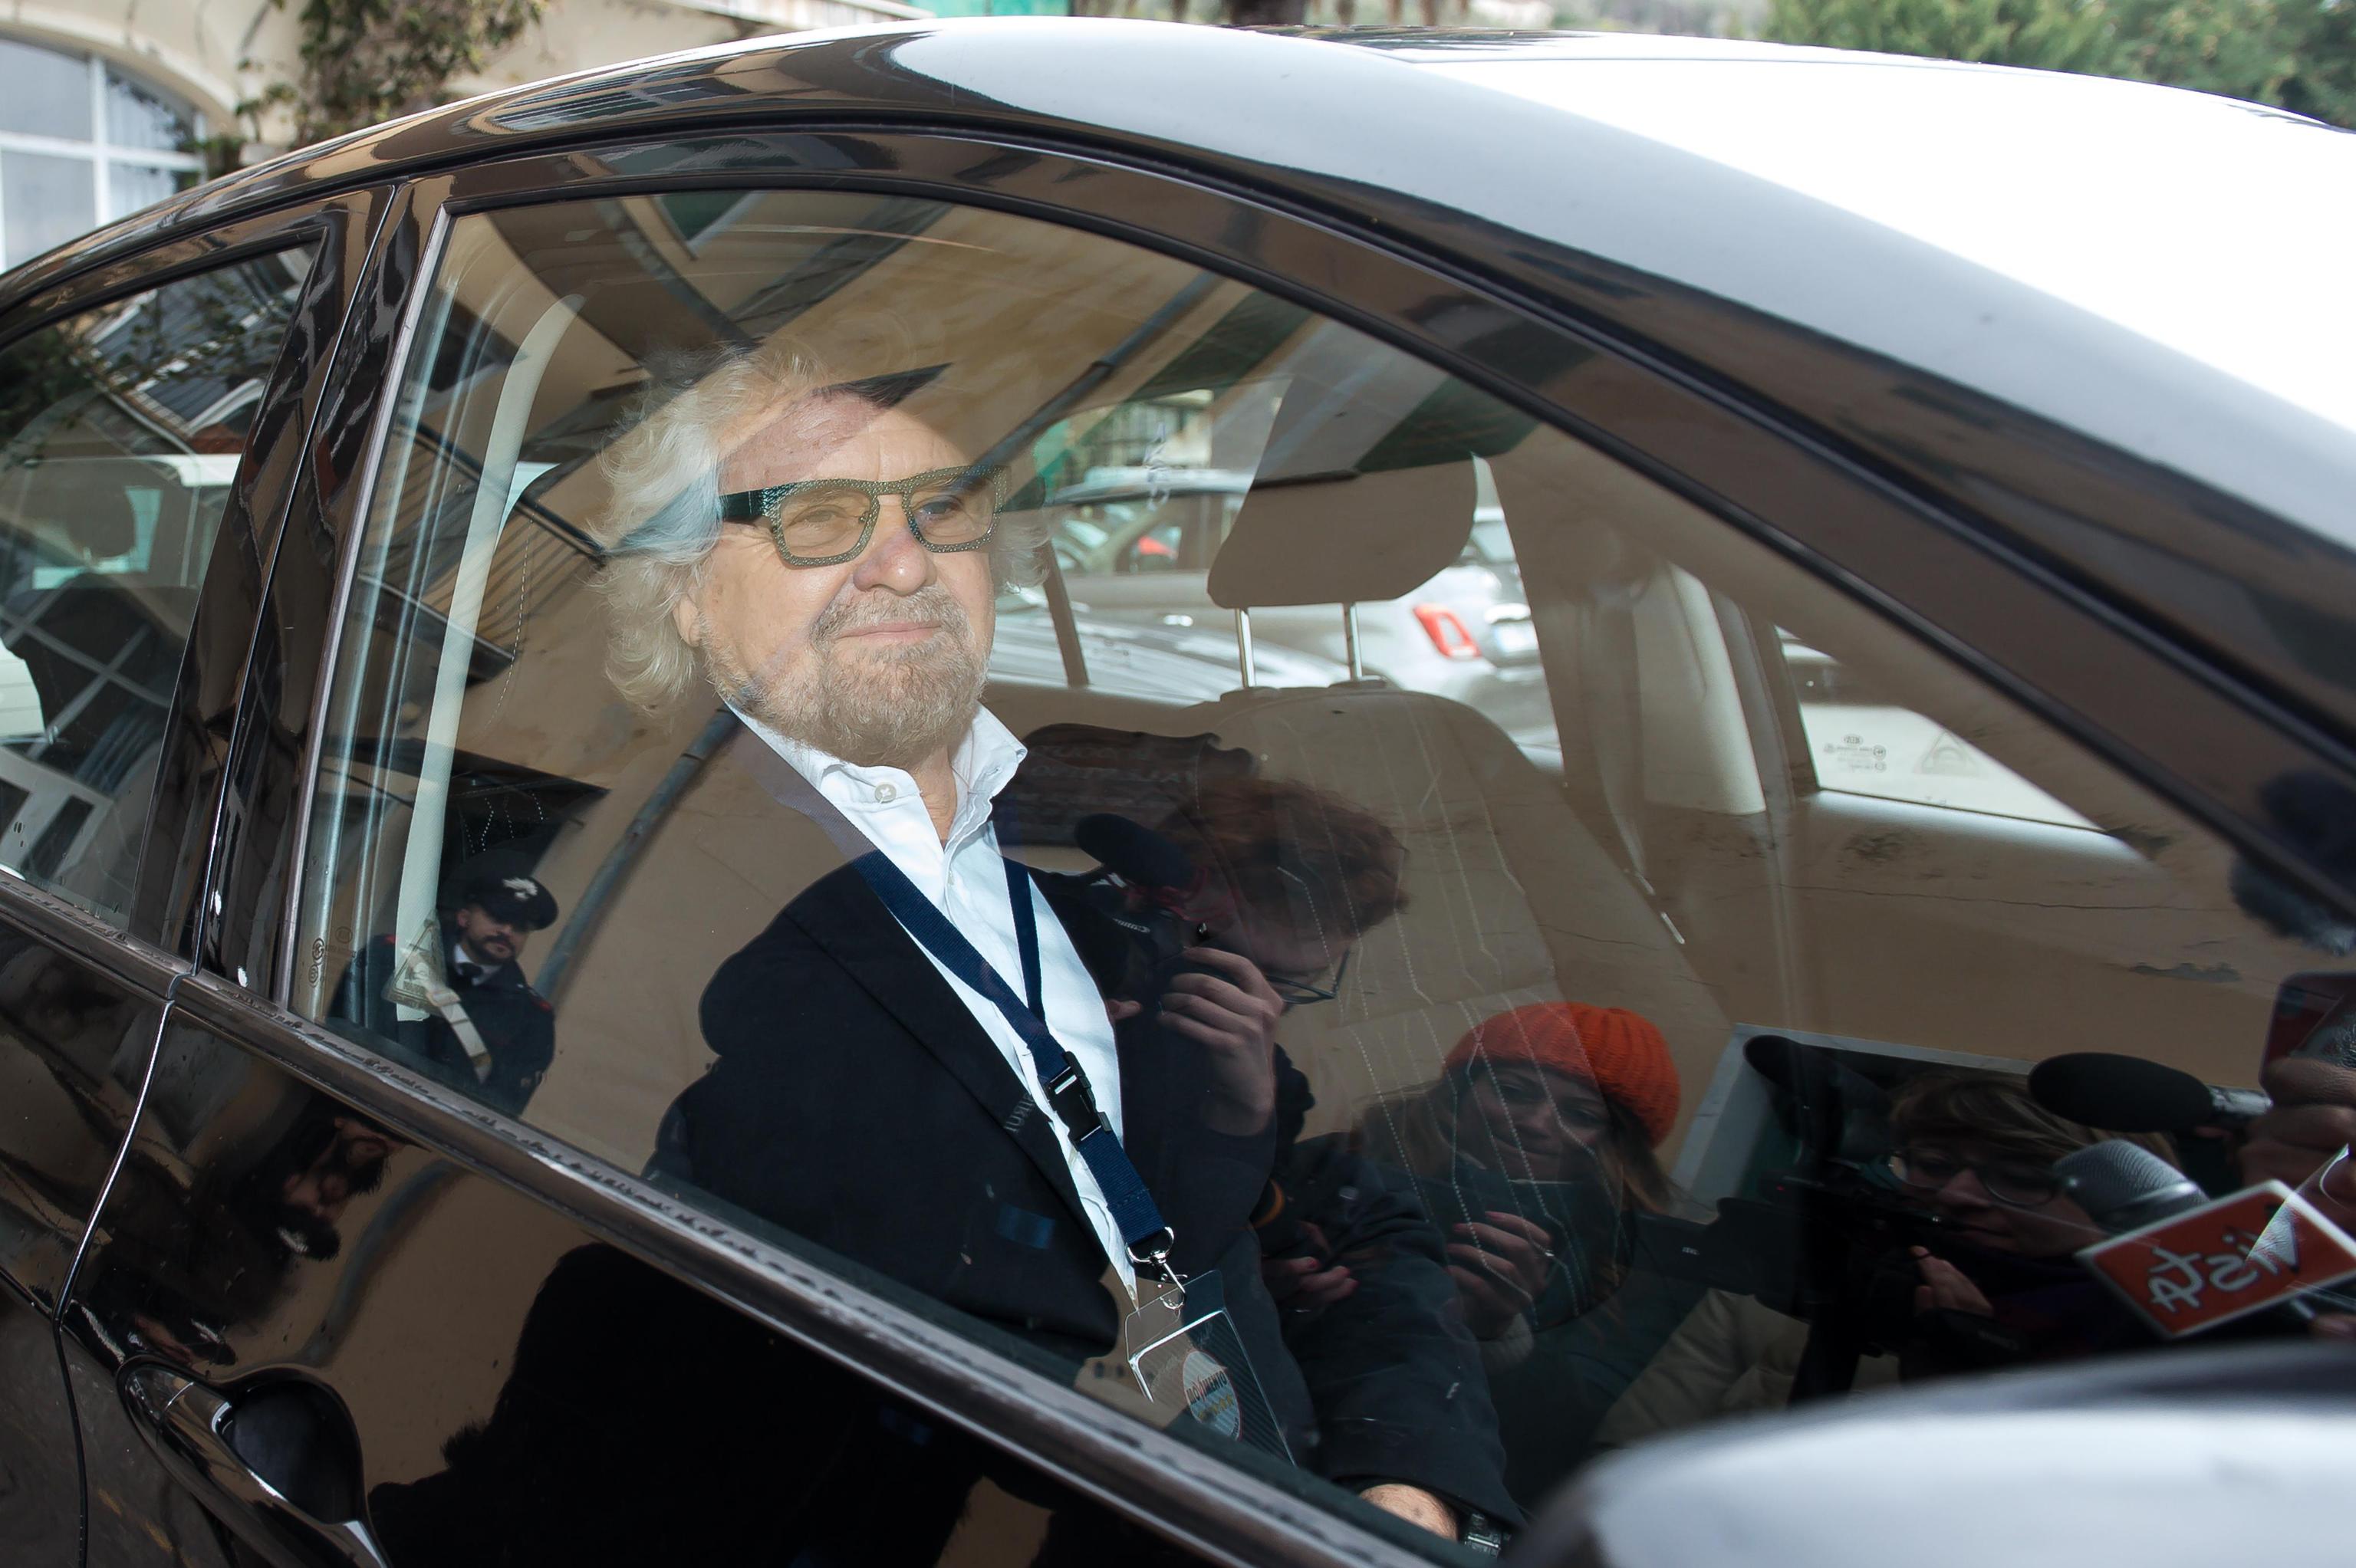 Pacco sospetto a casa di Beppe Grillo: scatta l’allarme sicurezza. È il secondo caso in pochi mesi